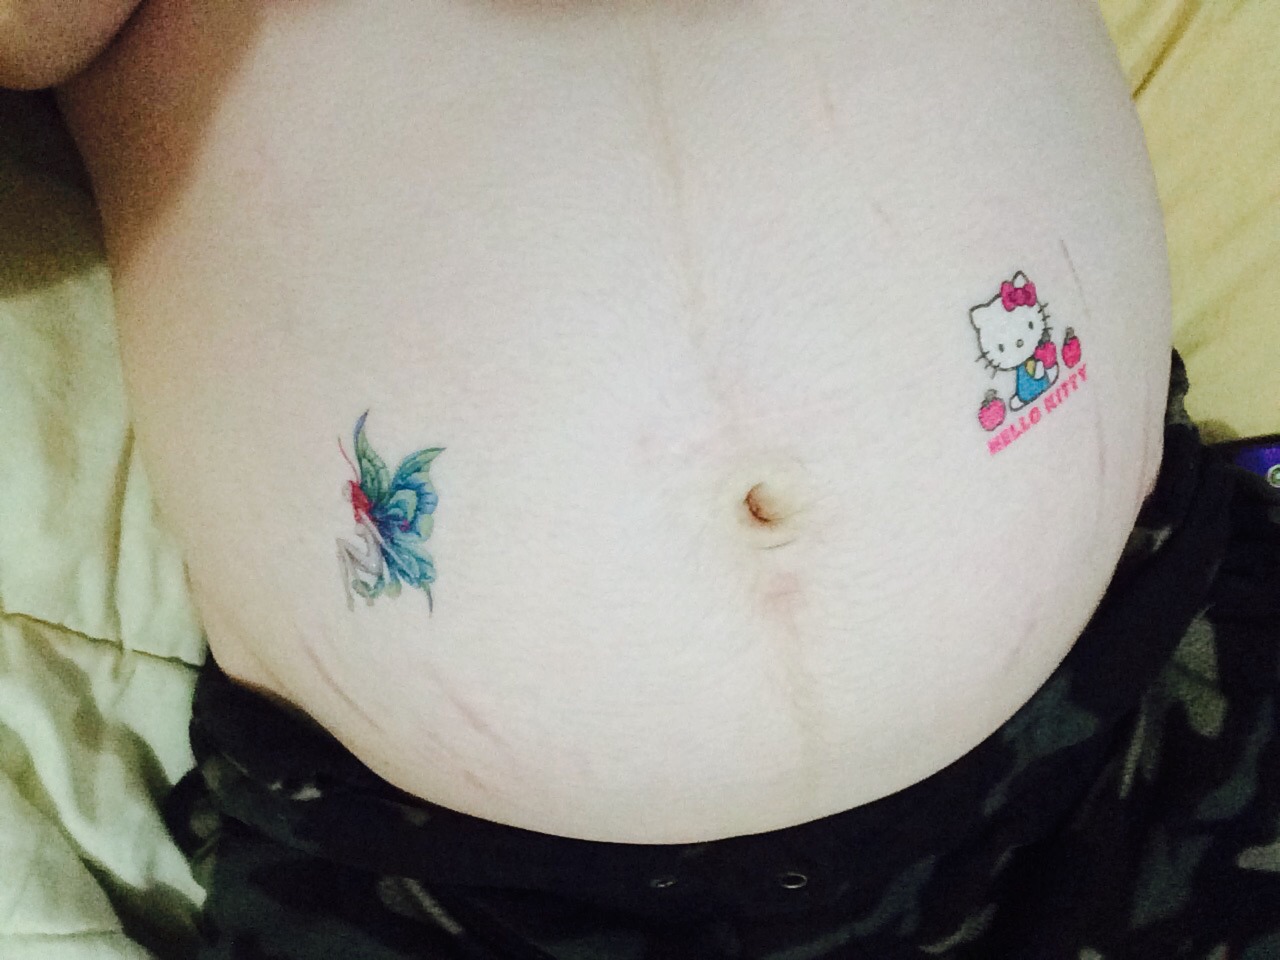 daddysbabydollxx:  Temporary tattoos on my belly 